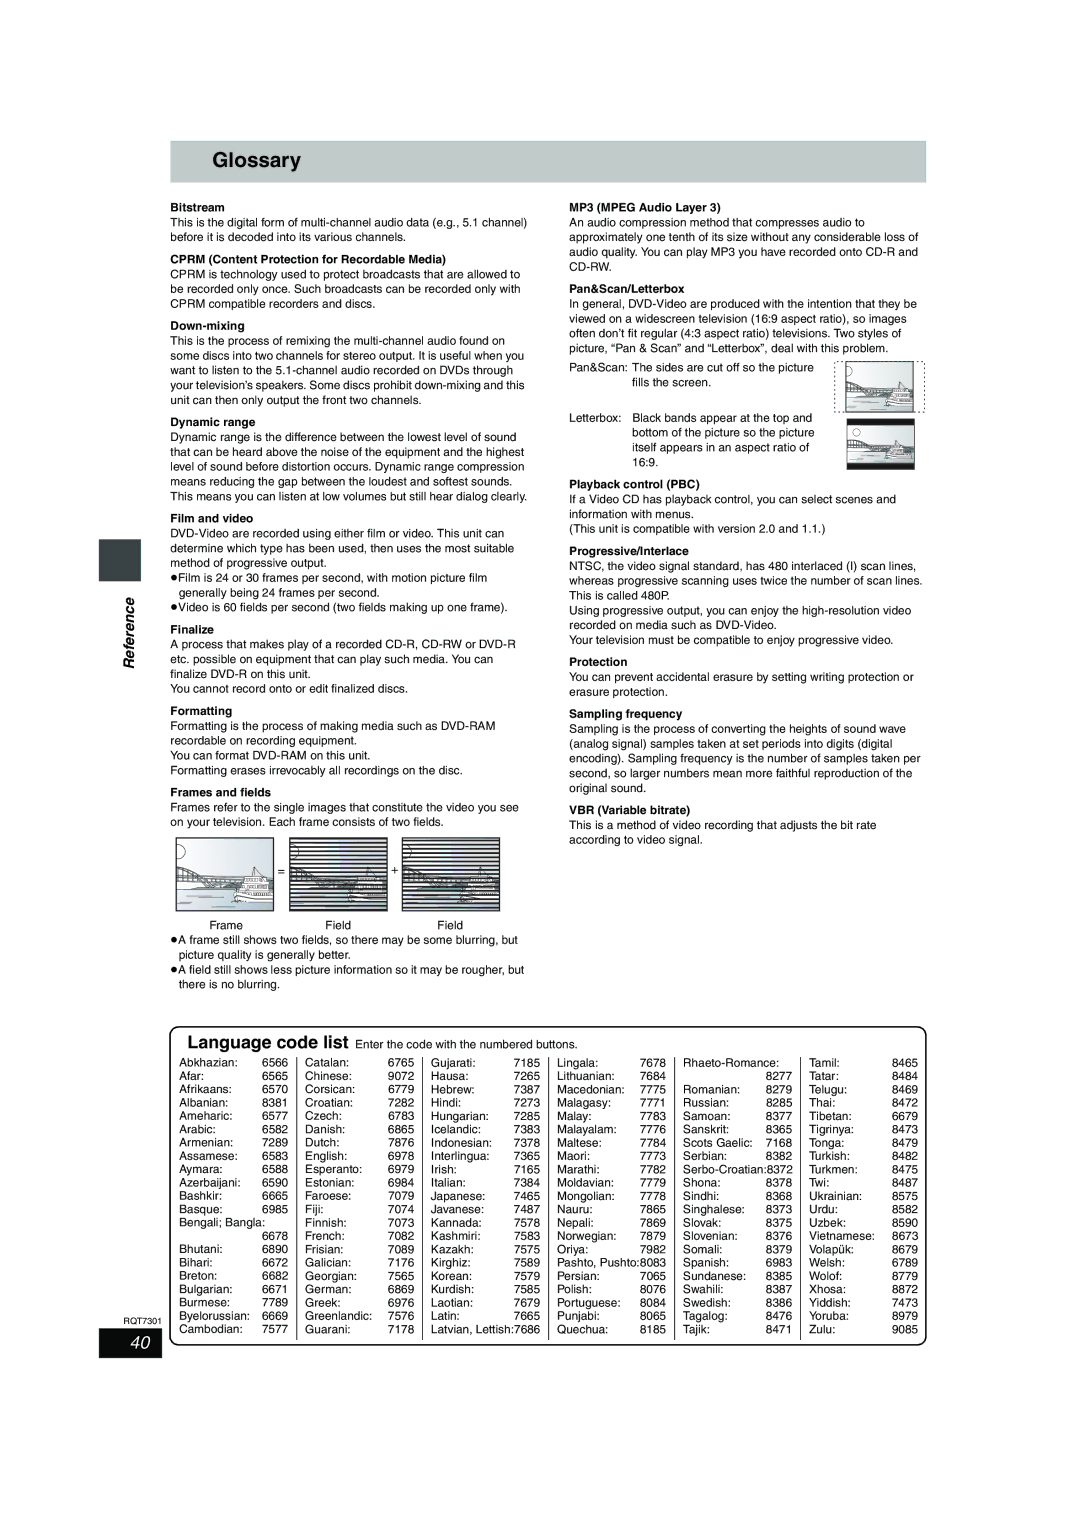 Panasonic DMR-E55 warranty Glossary 